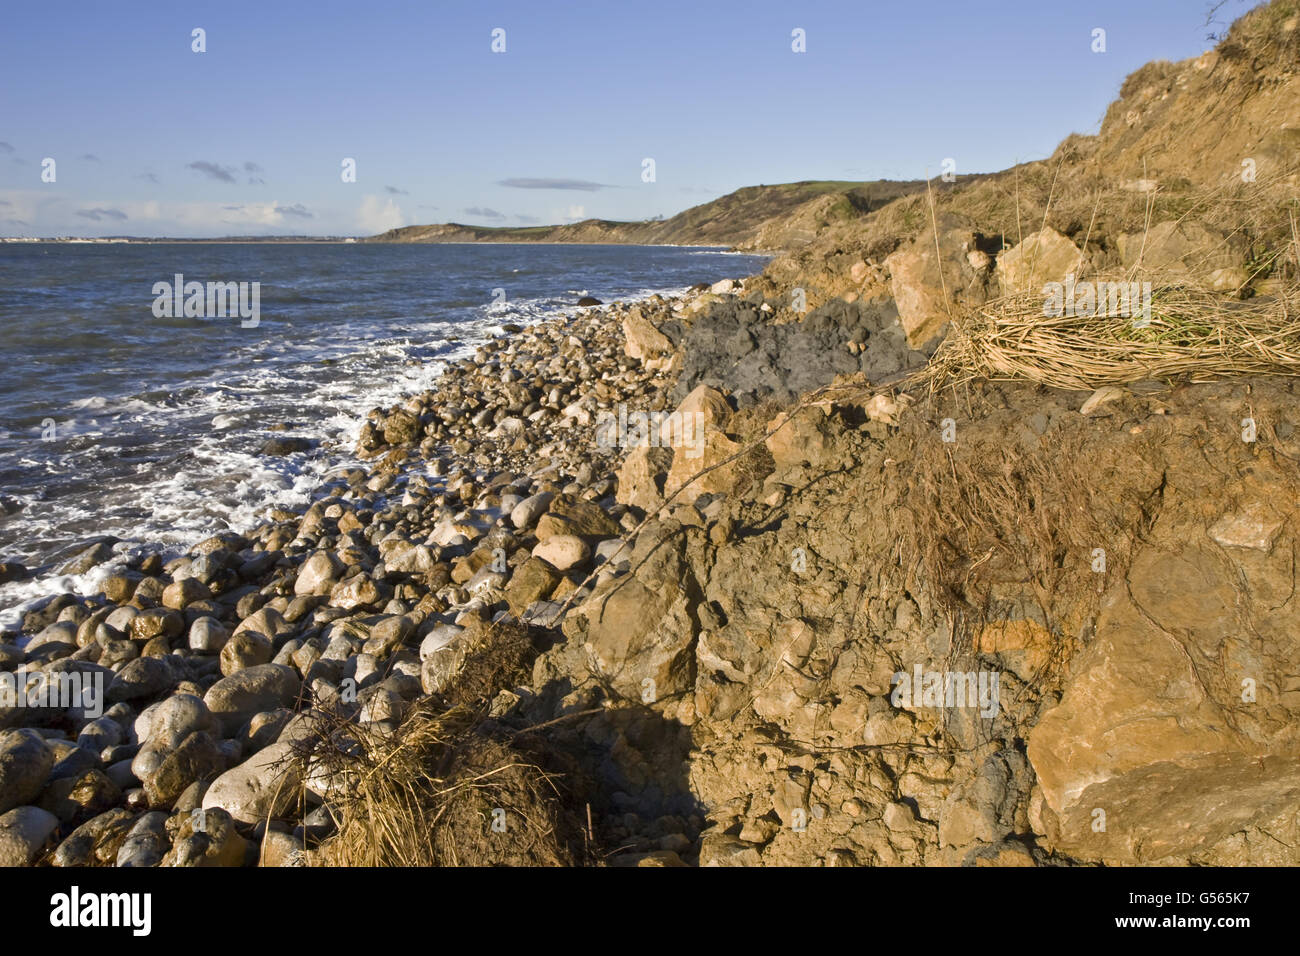 Avis de rocky shore montrant l'érosion récente après les tempêtes d'hiver, Osmington, Dorset, Angleterre, Janvier Banque D'Images